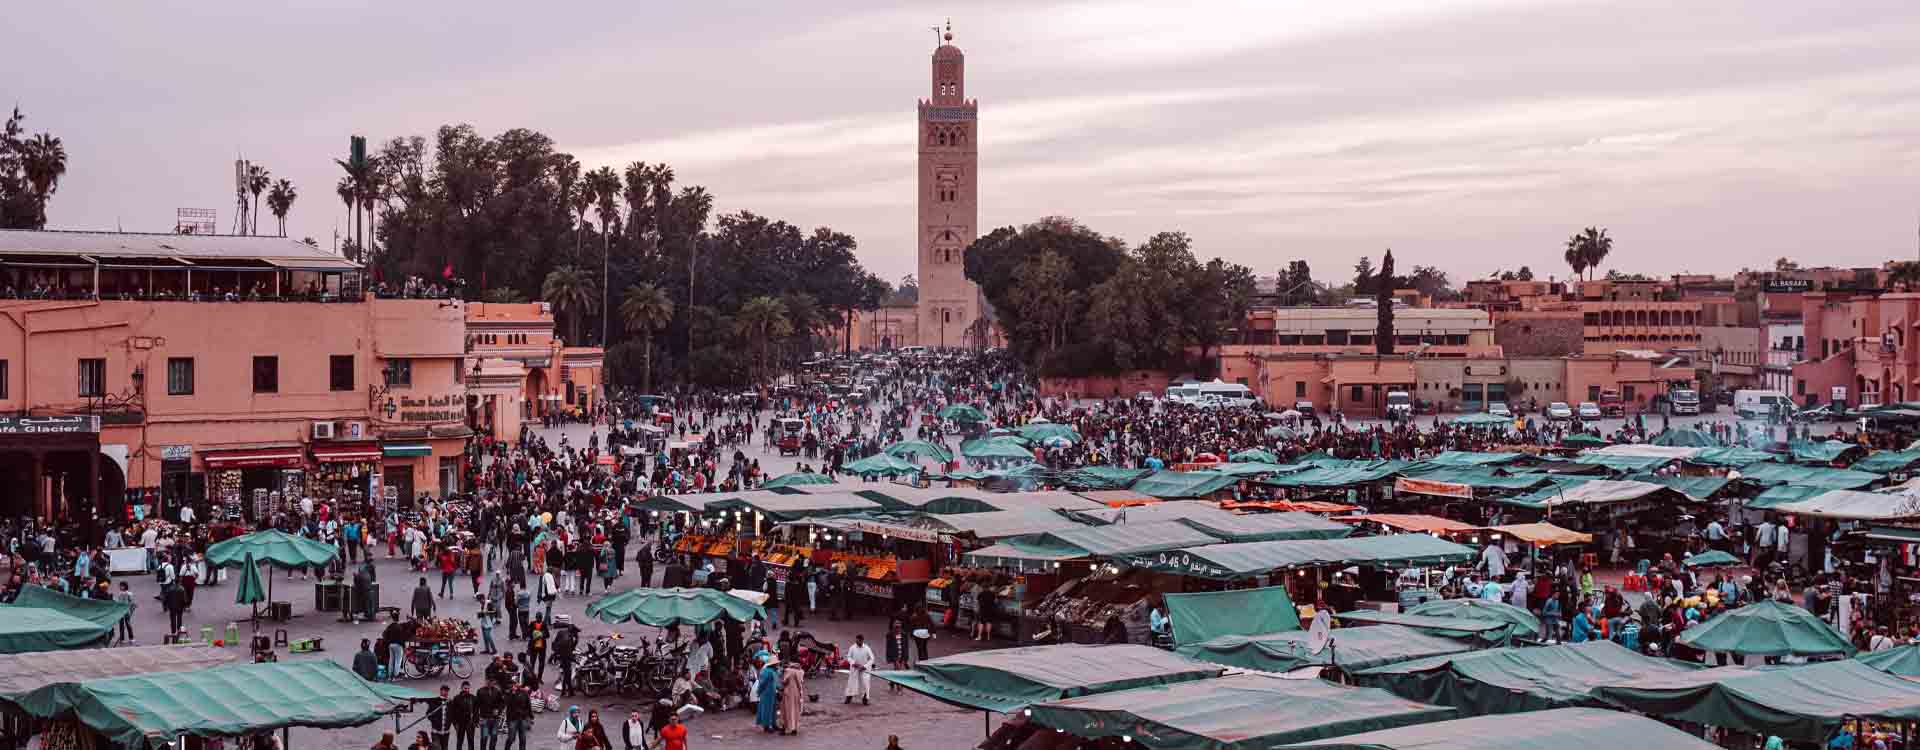 Námestie Djeema el Fna v Marrakéši